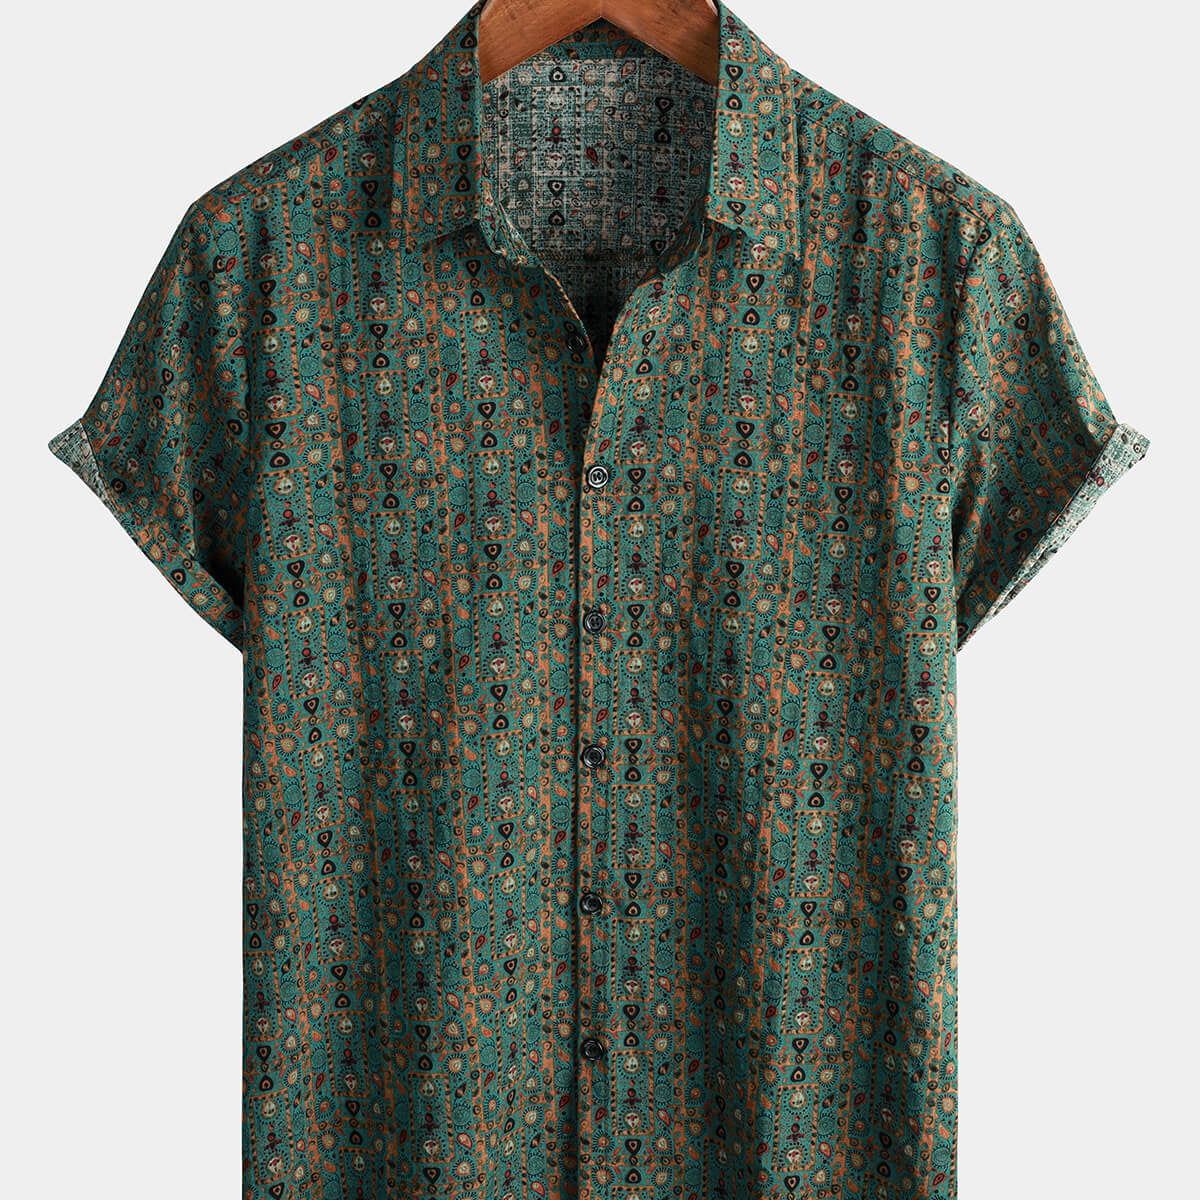 Chemise à manches courtes pour homme Vintage Paisley Print 70s Green Boho Retro Tribal